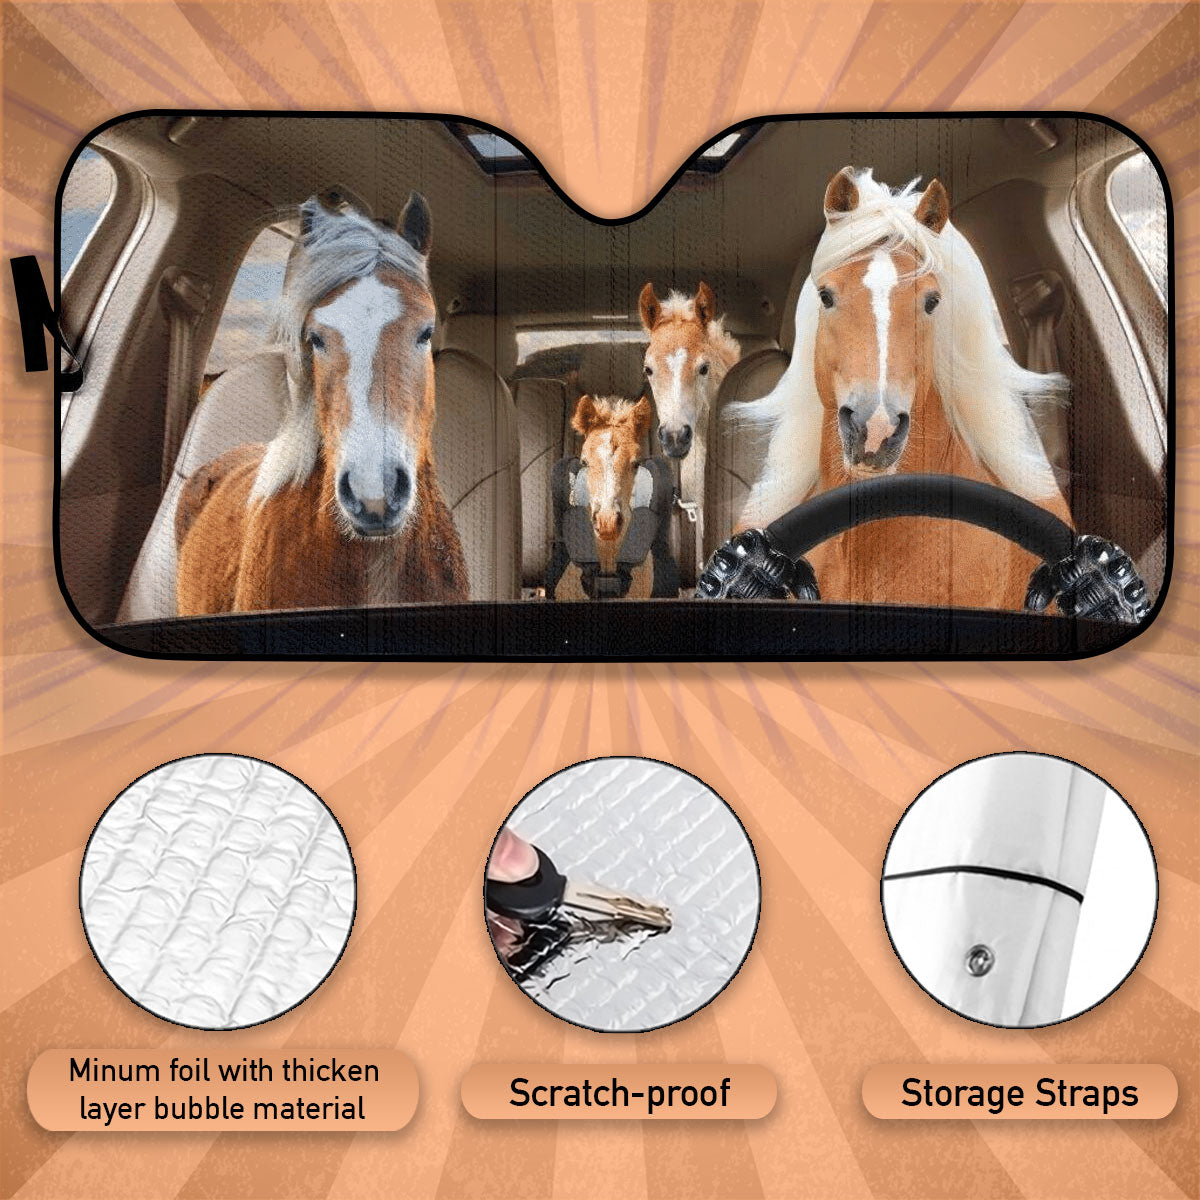 Custom Windshield Sun Shade for Car Haflinger Horse Driver Car Sun Shade - Car Accessory